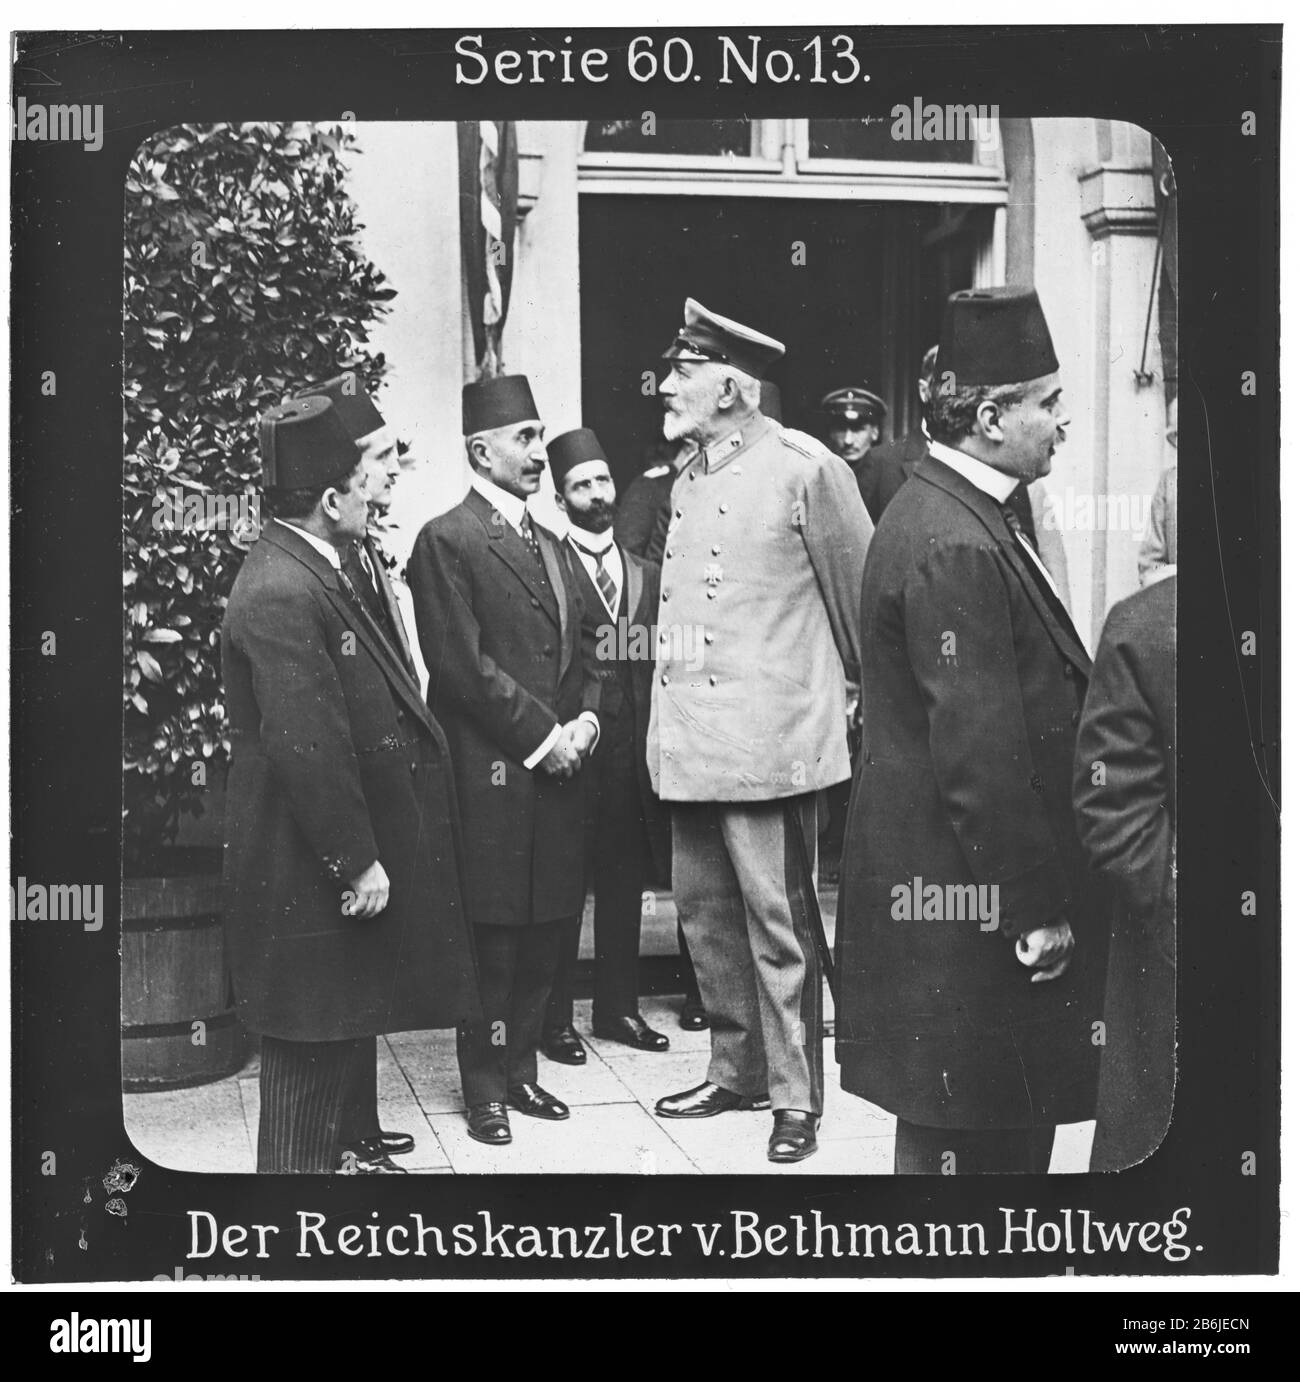 Projektion für alle - der Weltkrieg: Siegerleiche Führer Serie 60. Nr. 13. Reichspanzler v. Bethmann Hollweg. Theobald von Bethmann Hollweg (1856 - 1921) war von den Jahren von 1909 bis 1917 der Kriegskanzler. - die Firma "Projektion für alle" wurde 1905 von Max Skladanowsky (1861-1939) gegründet. Sie produzierte bis zum Jahre 1928 fast 100 Serien zu je 24 Glasdias im Format 8,3 x 8,3 cm im Sog. Bromsilber-Gelatin-Trockenplatten Verfahren. Die ersten Städte vor allem in den Bundesländern, Länder aber auch Märchen und Sagen, das alte Testament und der Erste Weltkrieg. Stockfoto